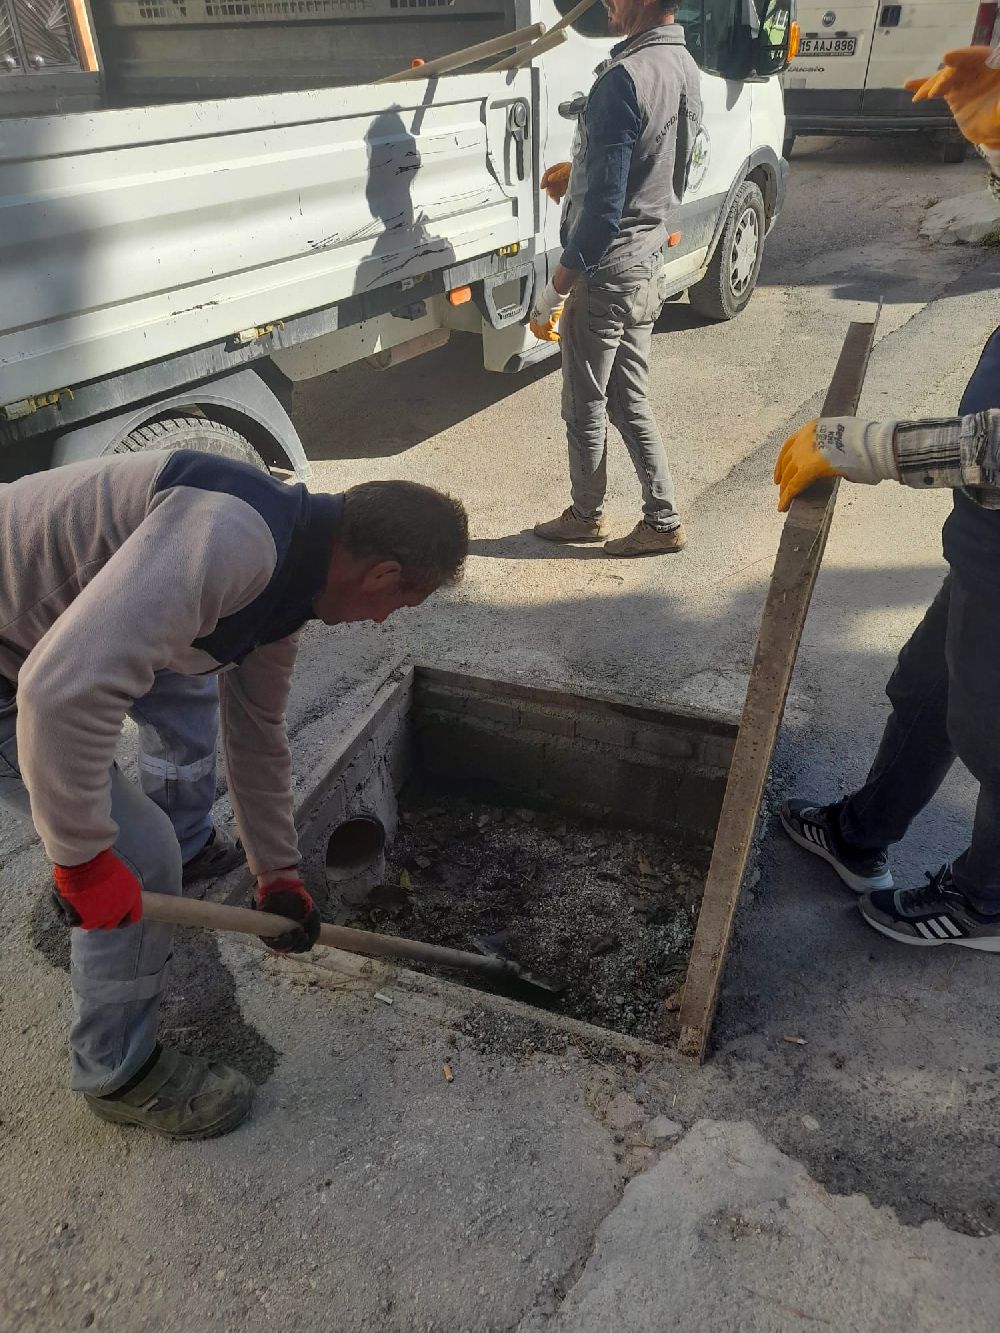 Burdur'da aşırı yağışlara karşı mazgal temizliği